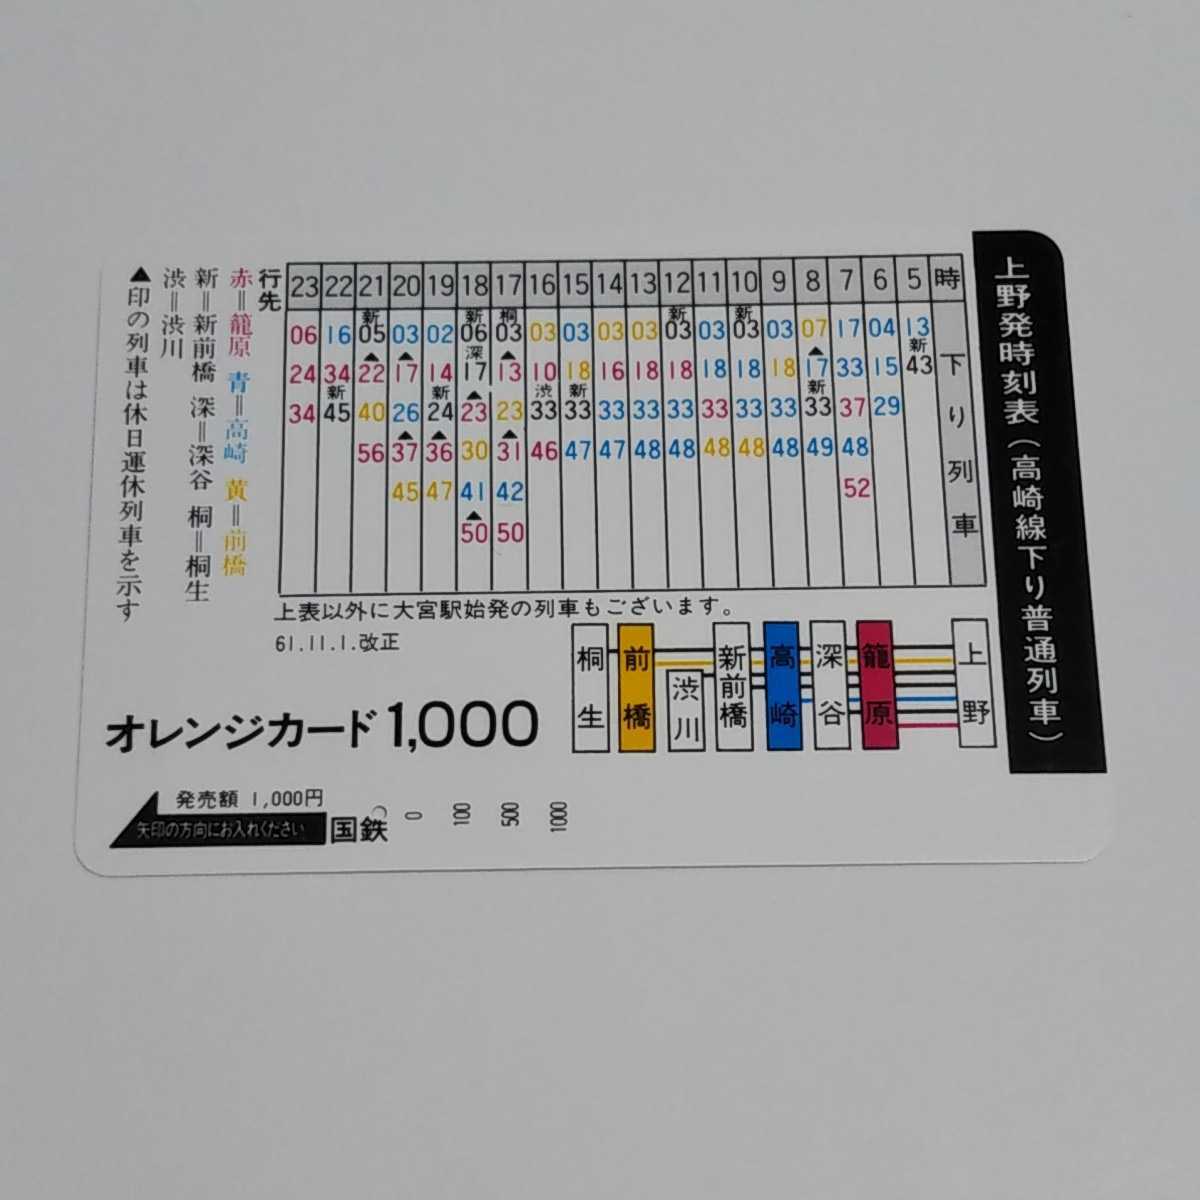 使用済み オレンジカード 国鉄 上野駅時刻表(高崎線下り普通列車) 1穴_画像1